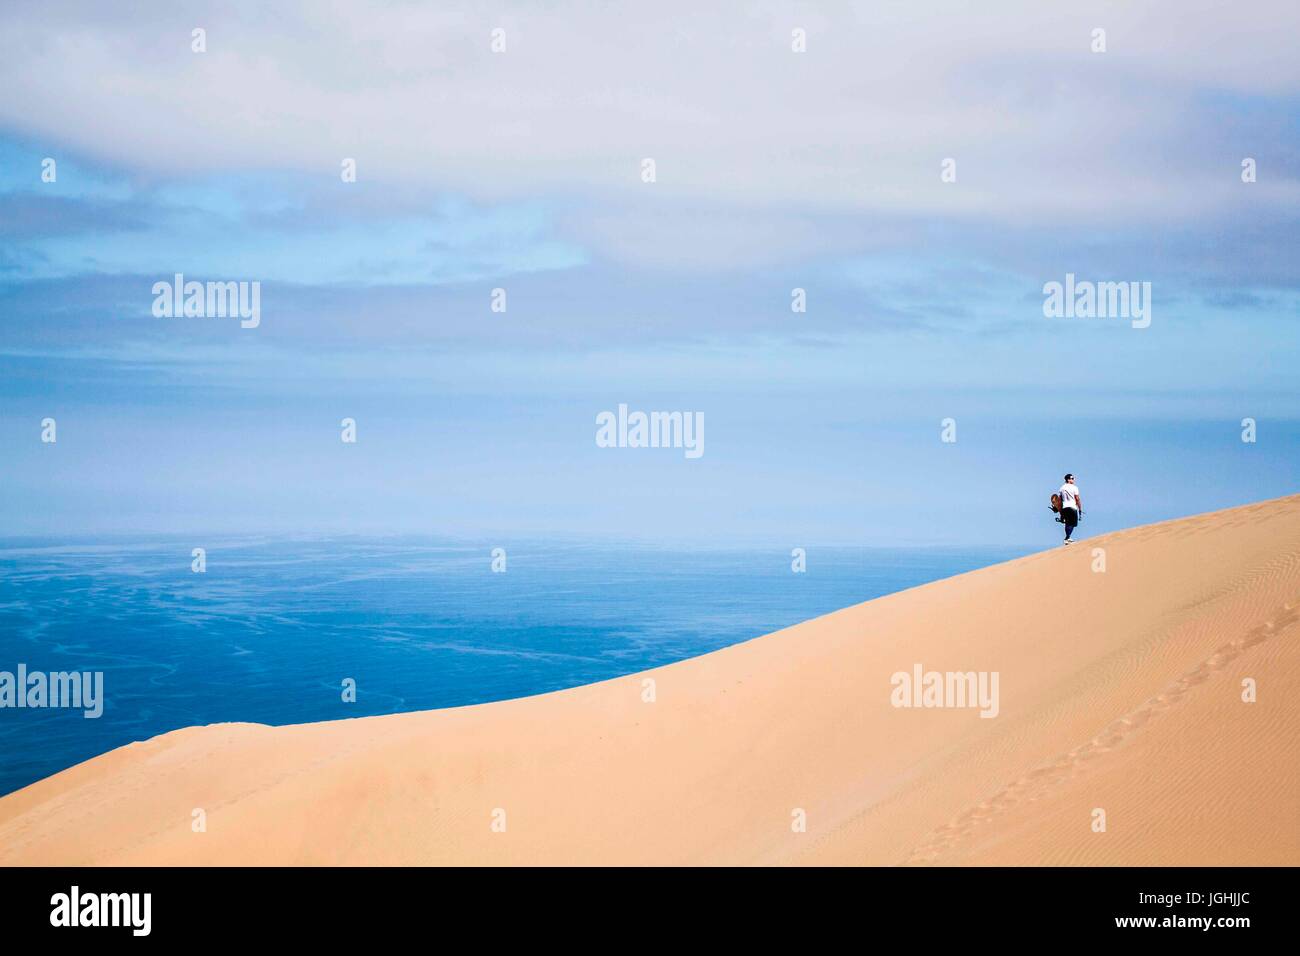 Sandboarder dans Alto los Verdes, au désert d'Atacama. Iquique, Chili, région de Tarapacá. 19.11.15 Banque D'Images